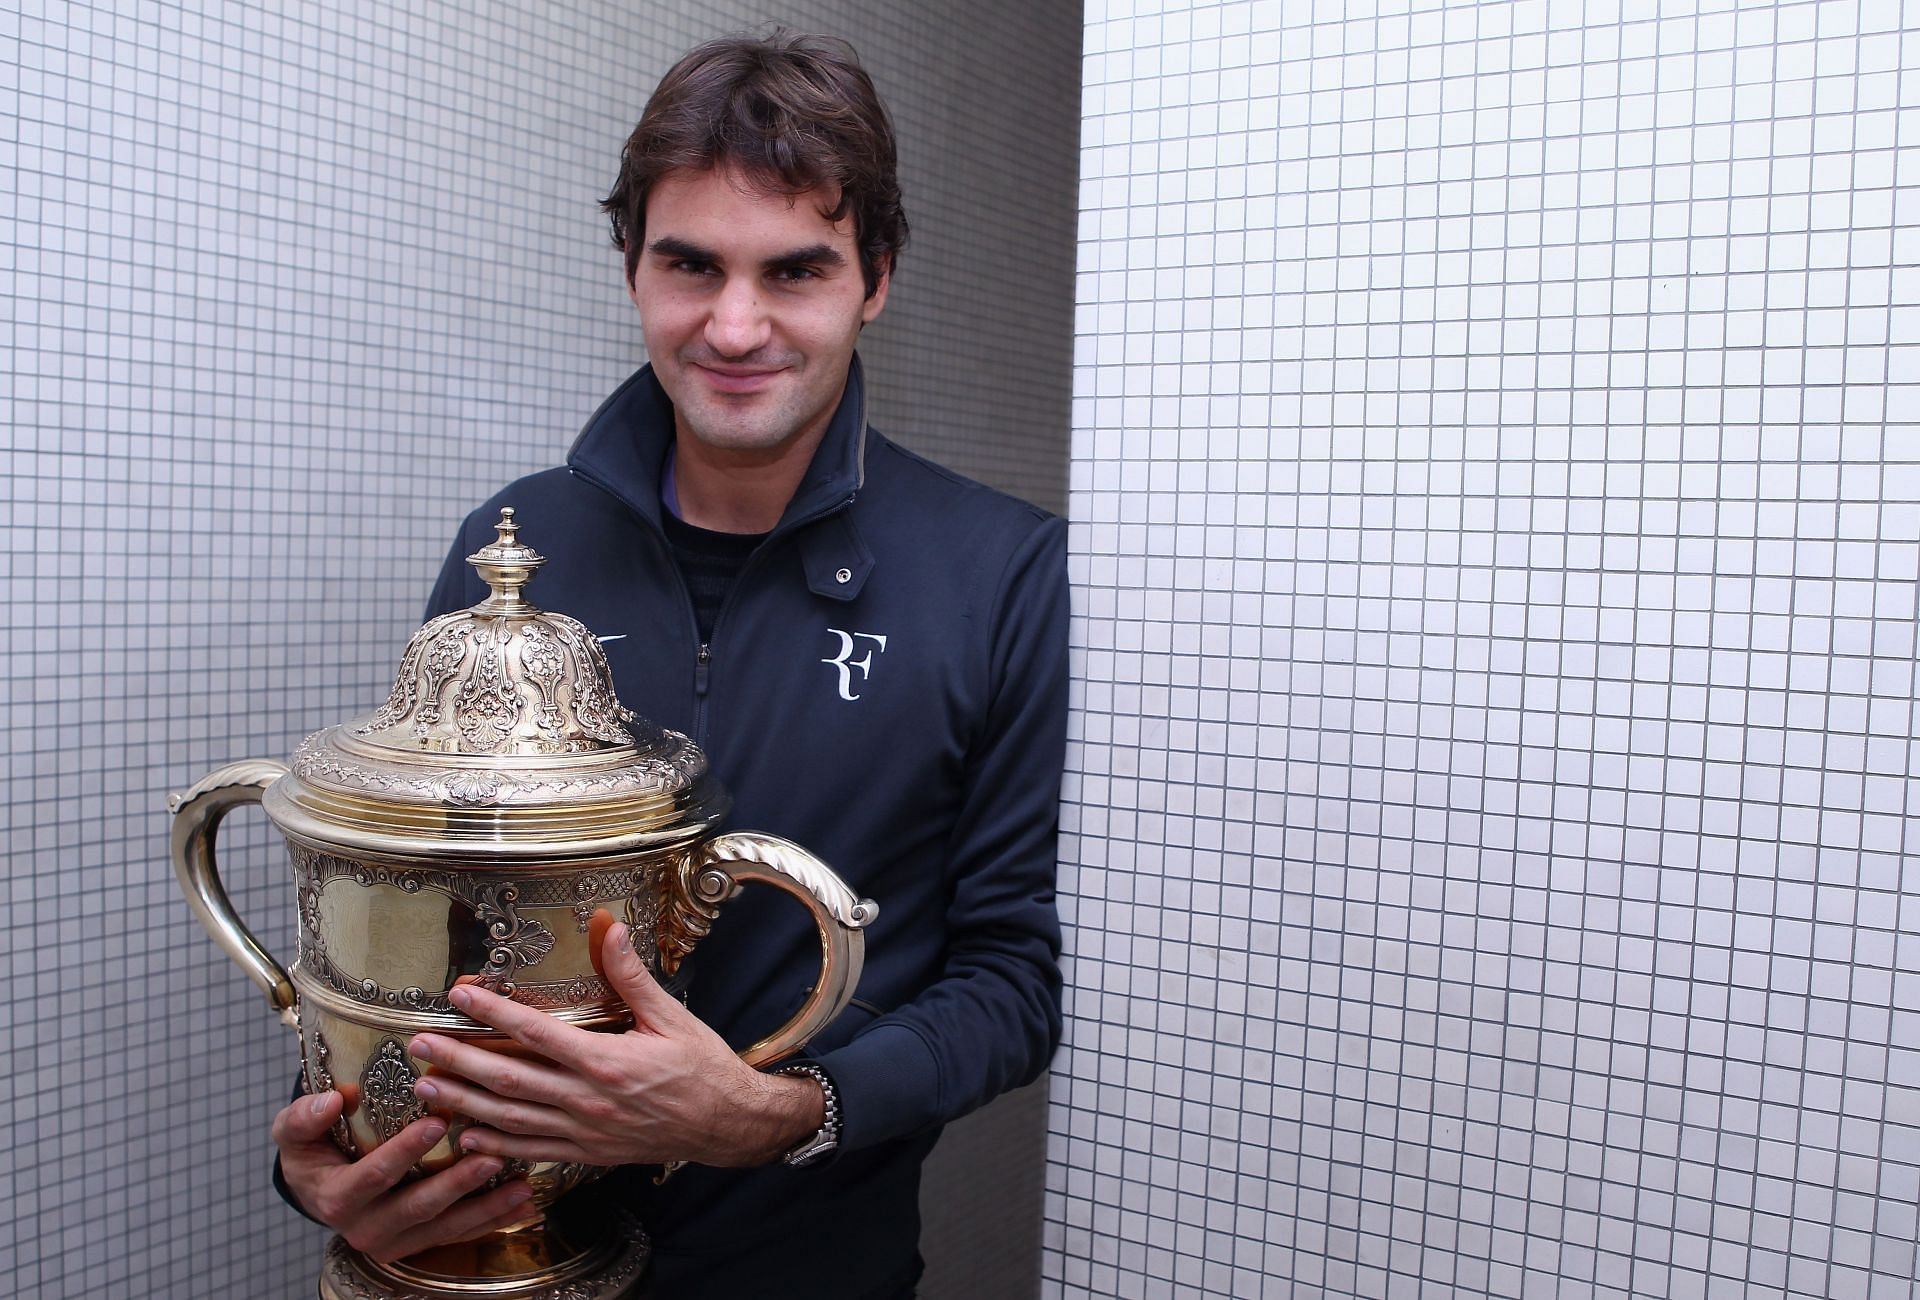 Roger Federer won his last title at Basel 2019.